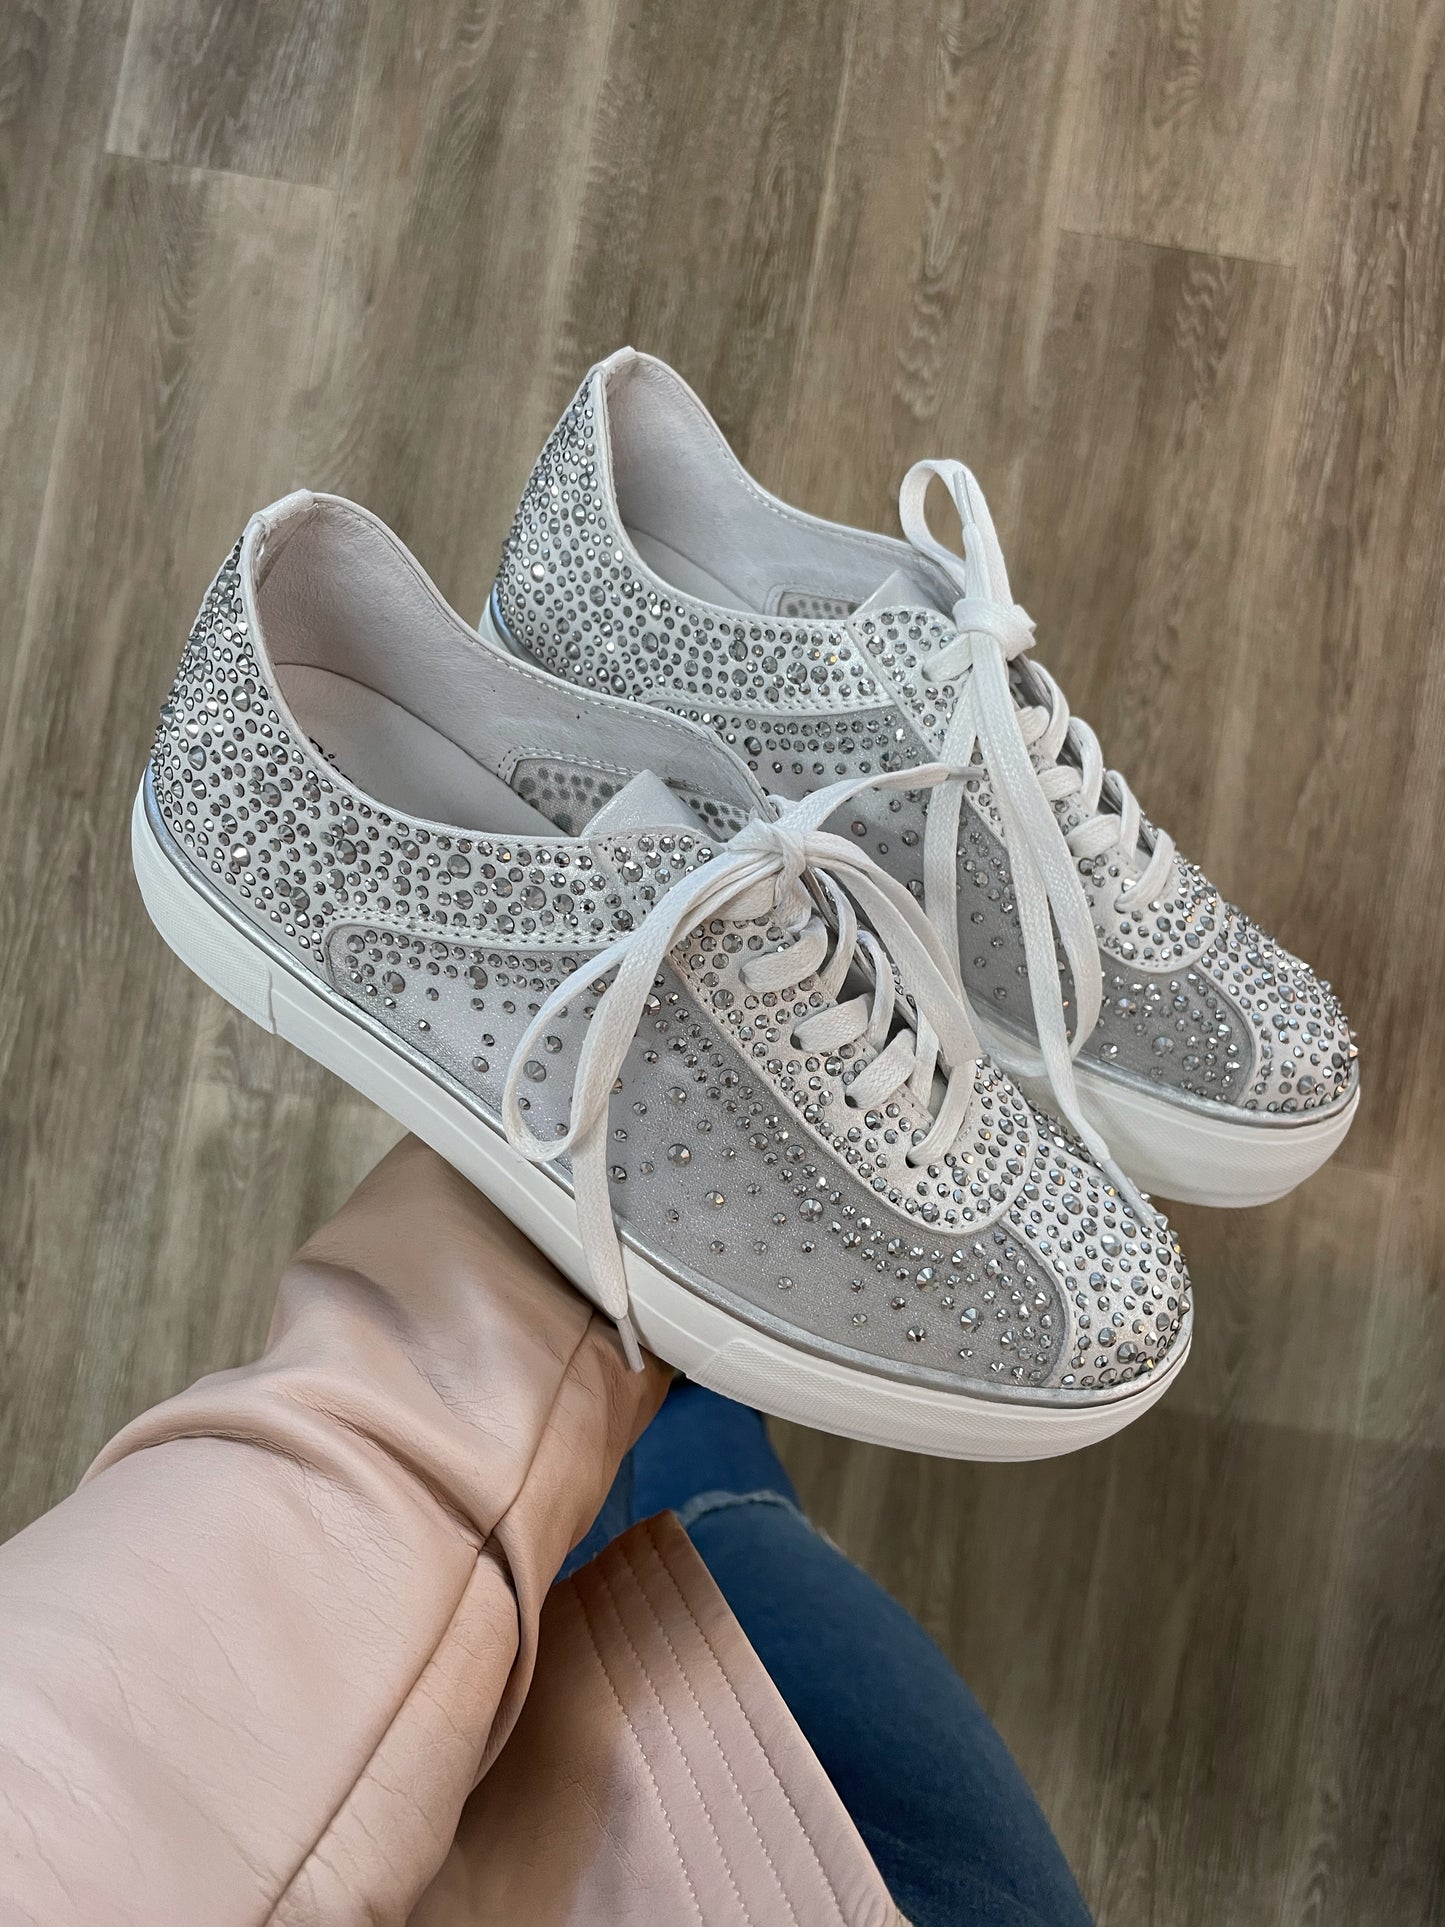 Flip White Shimmer - Emelda's Shoes